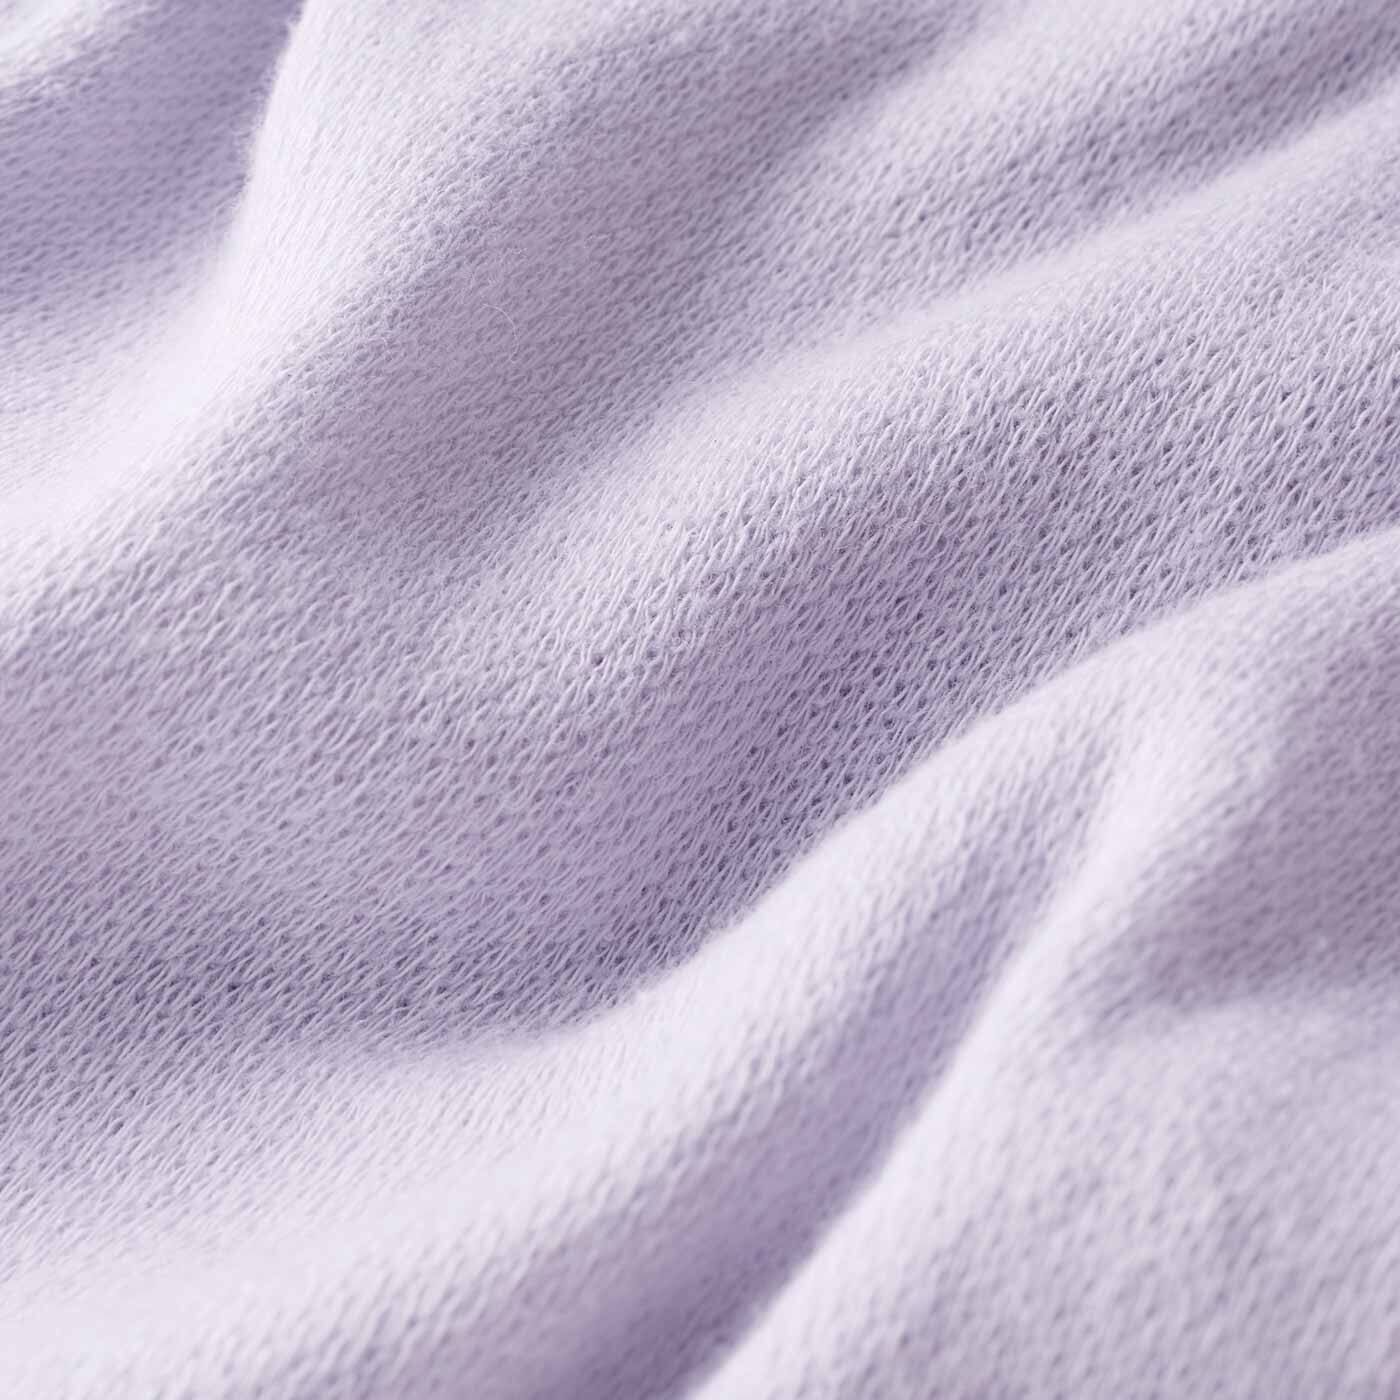 フラフィール|ぐーんとのびてヒップすっぽり ラベンダーカラー綿混ショーツの会|ストレッチ素材で伸縮性抜群。肌に当たる表面は綿素材。